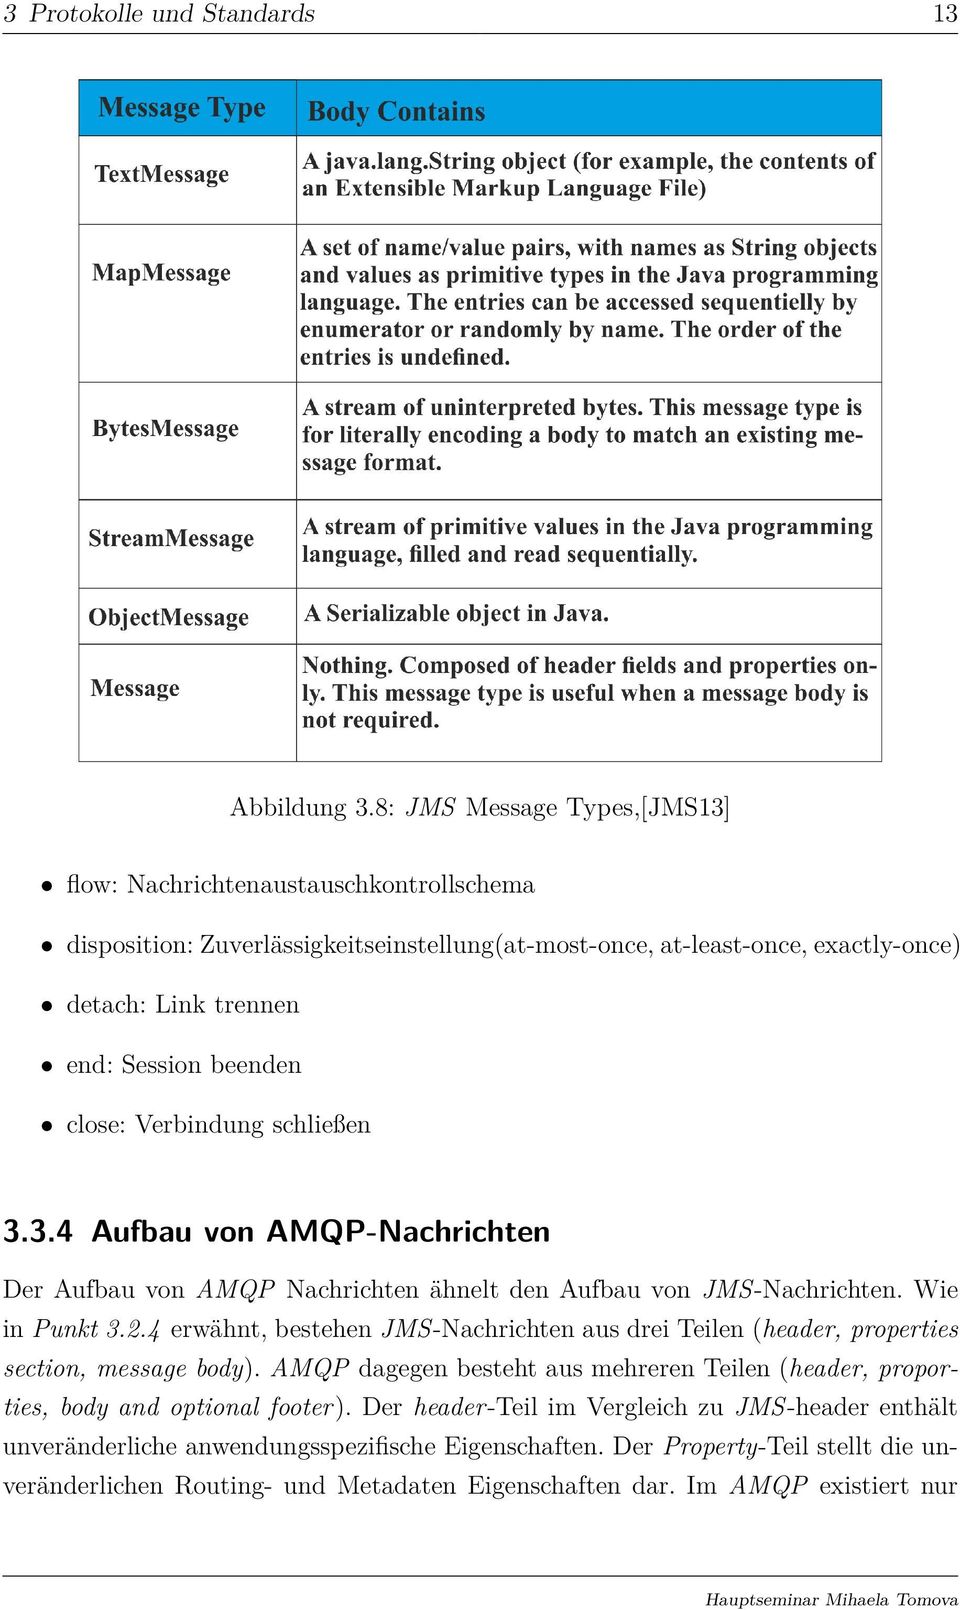 close: Verbindung schließen 3.3.4 Aufbau von AMQP-Nachrichten Der Aufbau von AMQP Nachrichten ähnelt den Aufbau von JMS-Nachrichten. Wie in Punkt 3.2.